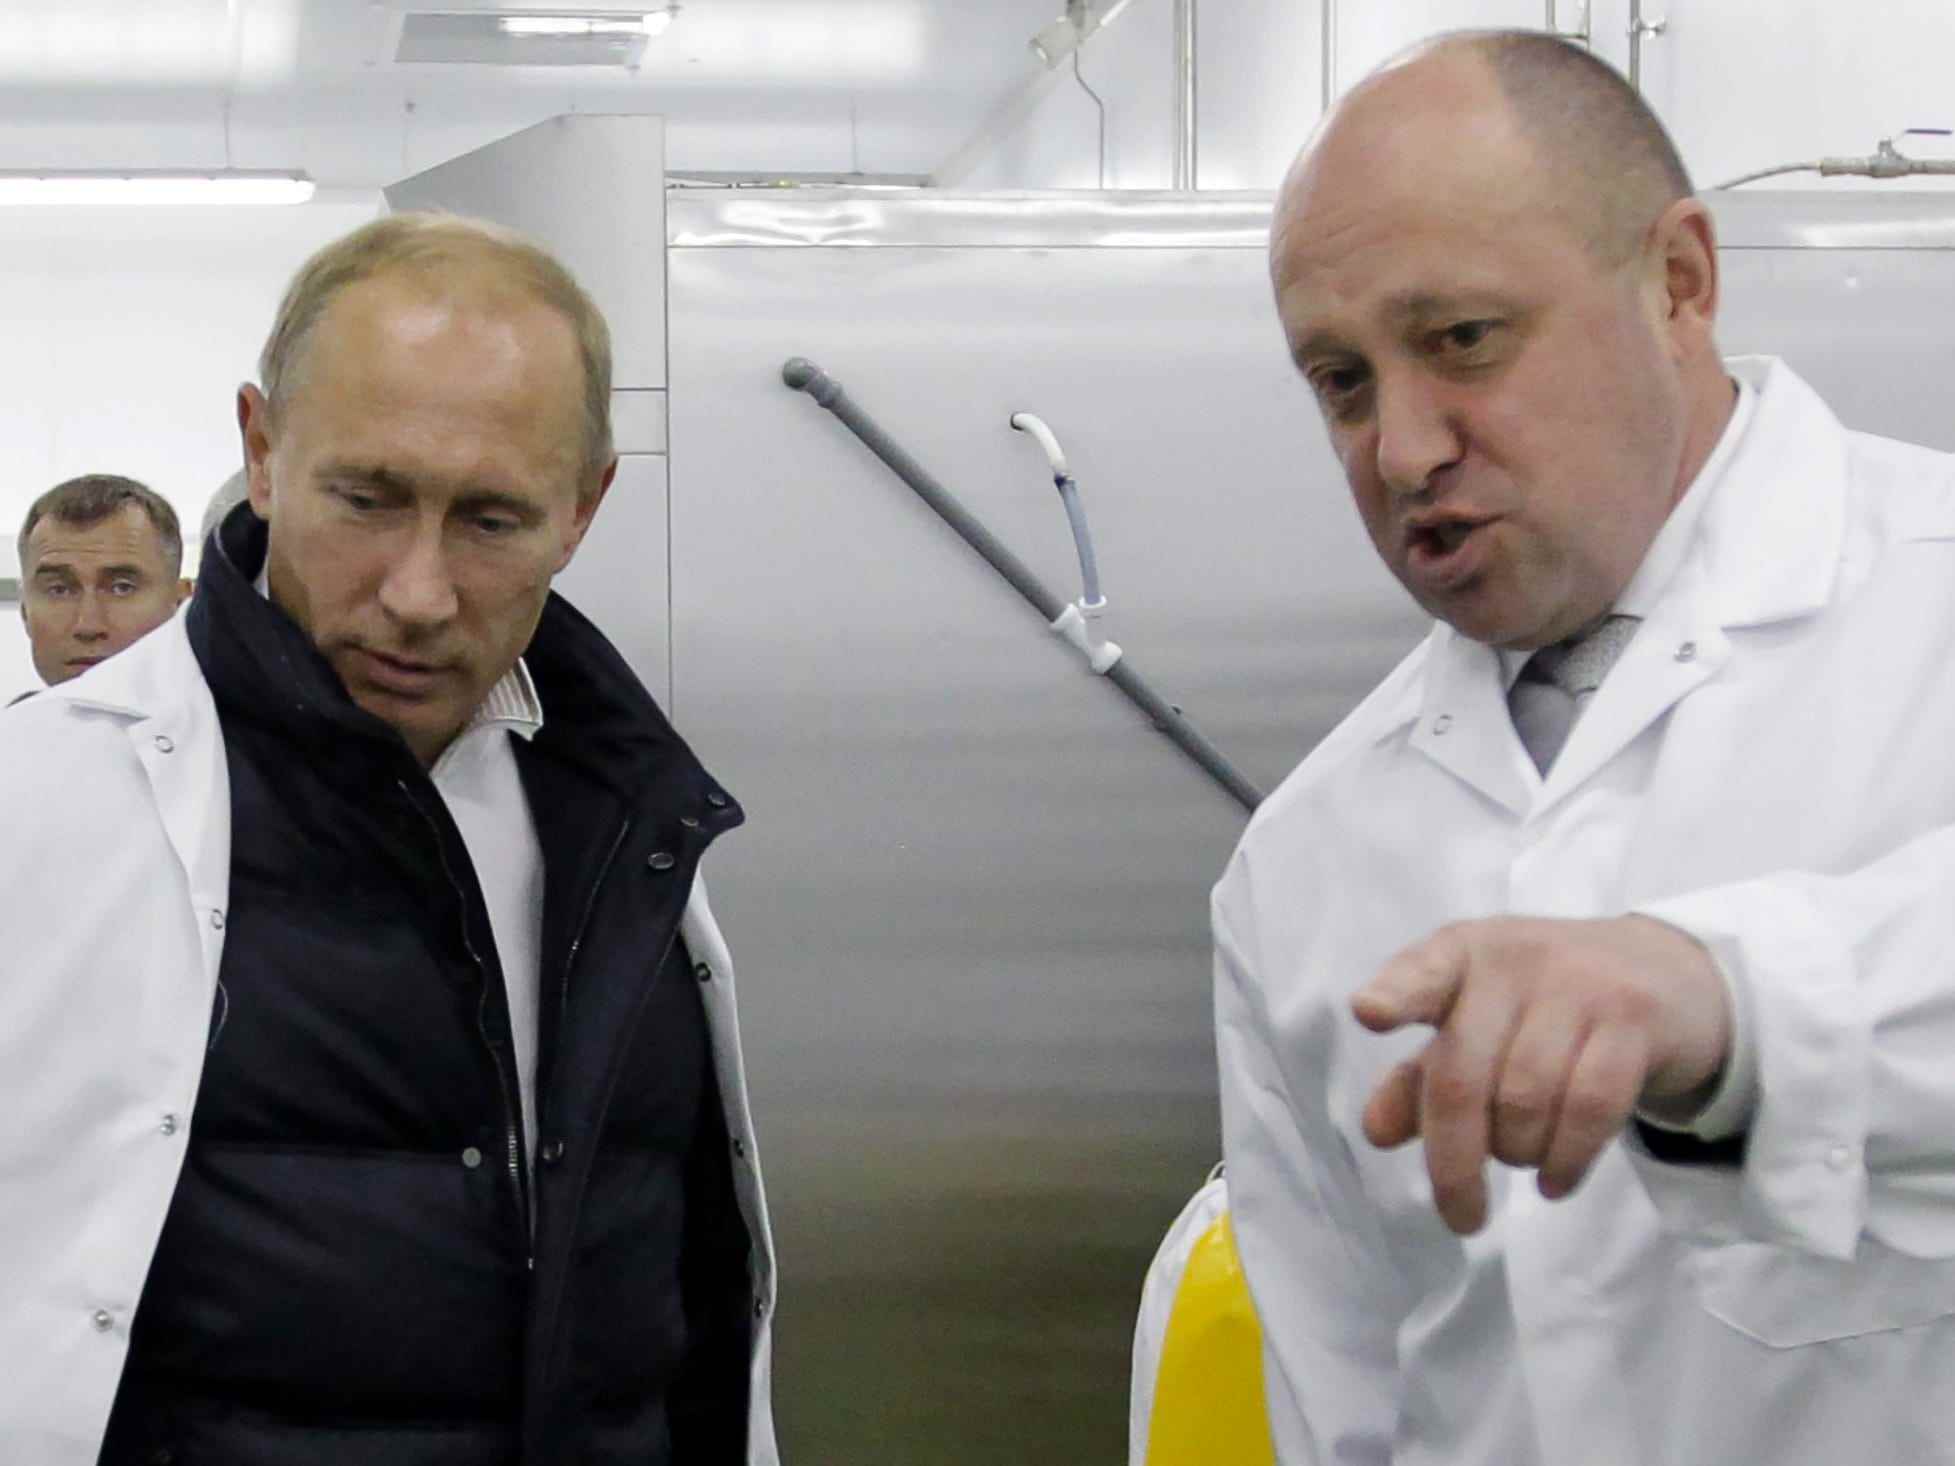 Putin und Prigozhin in weißen Kitteln, wobei letzterer auf etwas außerhalb der Kamera zeigt